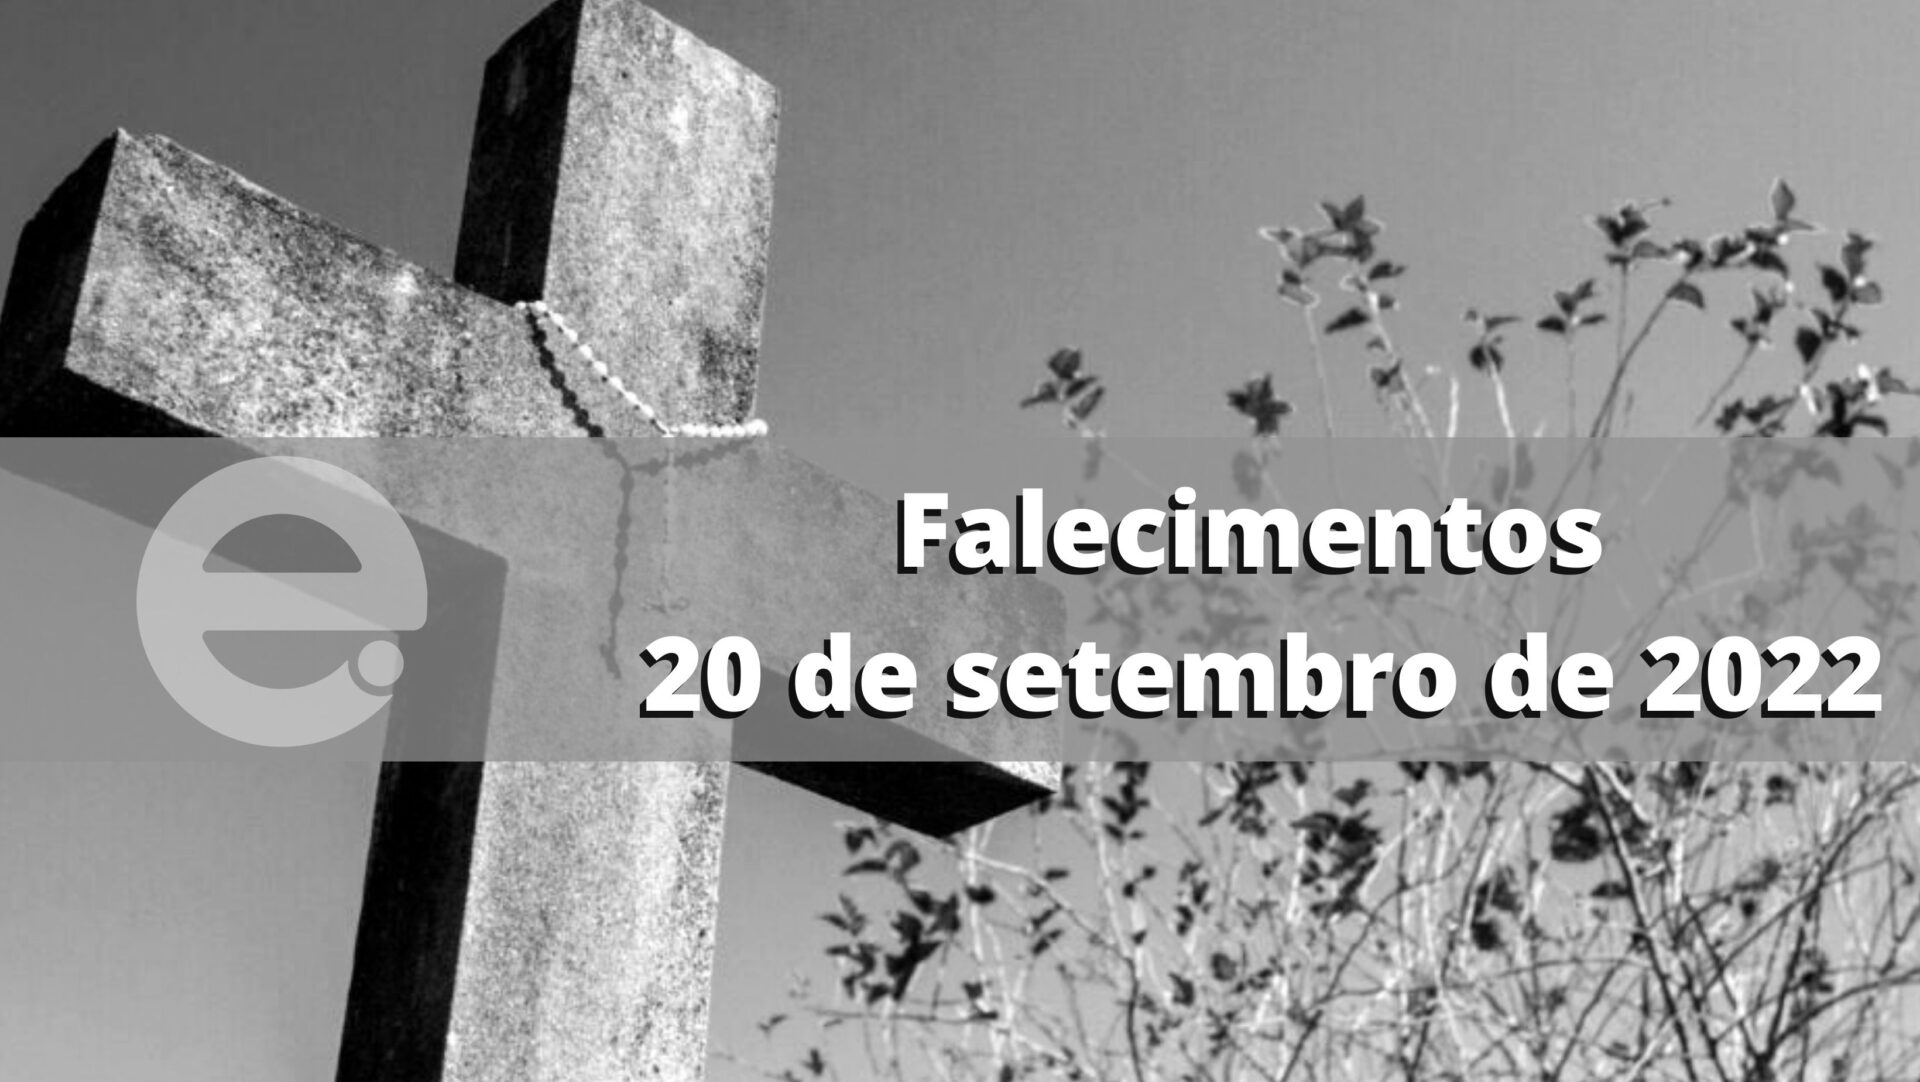 Confira os falecimentos desta terça-feira, 20 de setembro de 2022, em Limeira